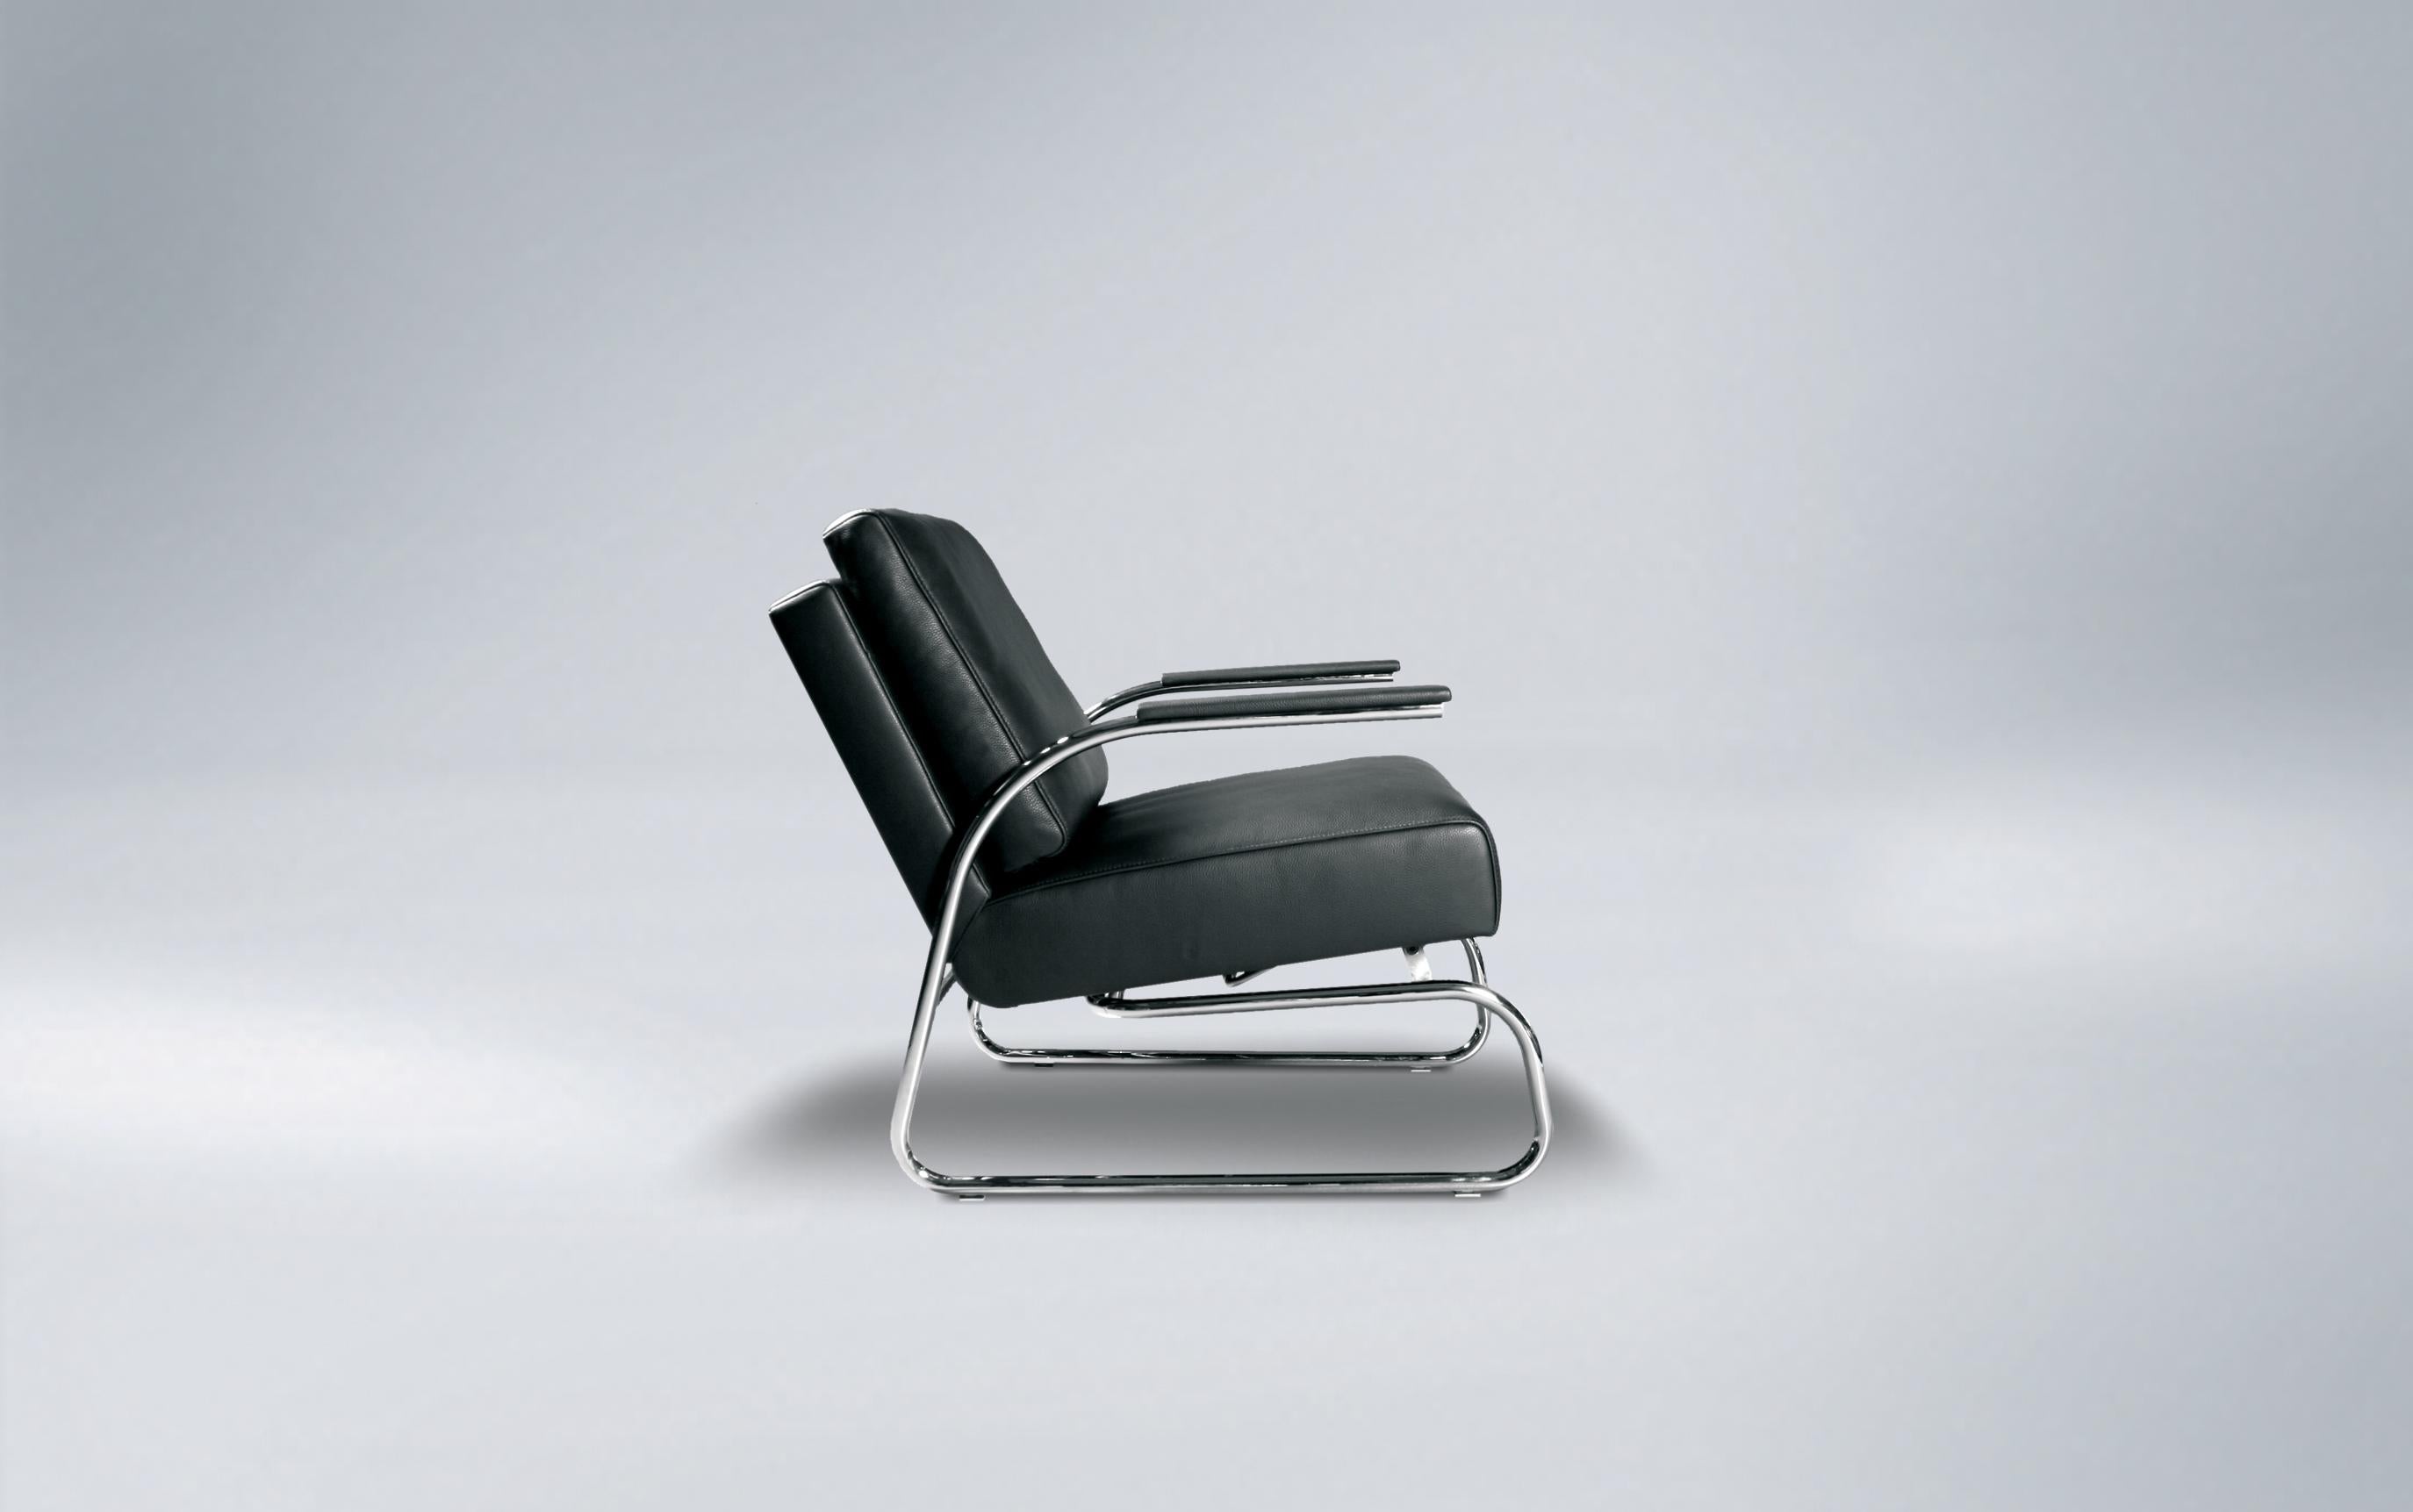 La chaise FSM Gabo de de Sede. Gabo a de multiples facettes. Prenez la chaise cantilever, élégante et stylée avec son profil classique à tube rond, ou l'élégante chaise à cadre à tube carré. Les deux se combinent bien comme chaises d'appoint